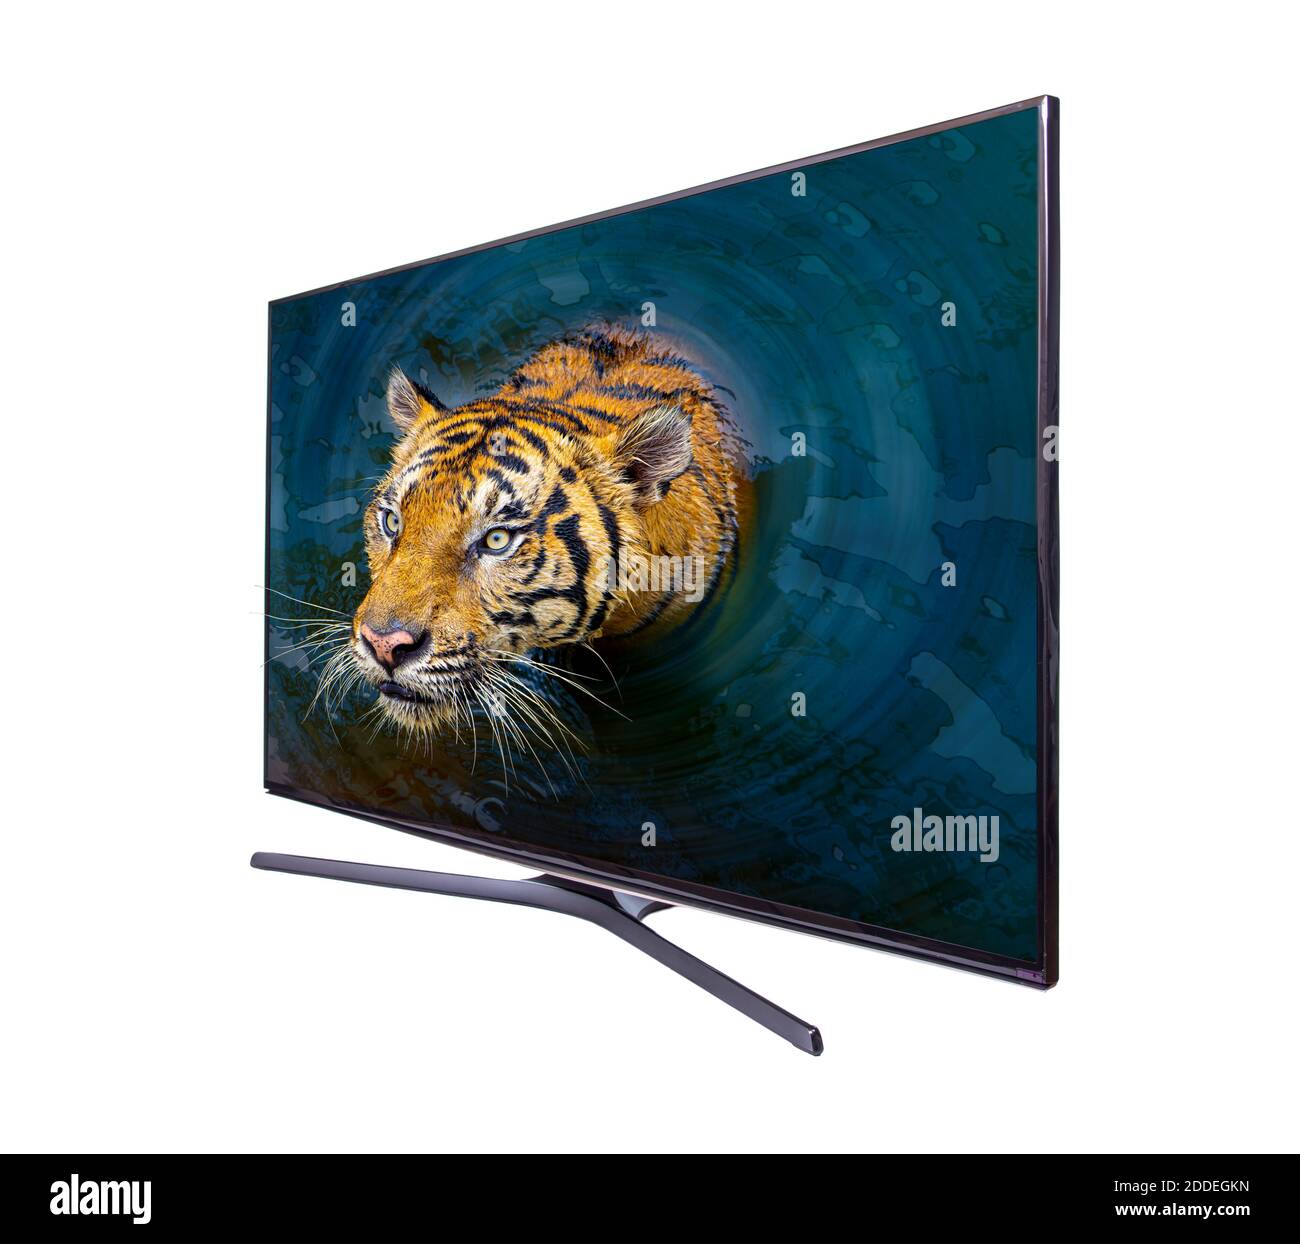 La tigre esce dallo schermo del televisore, isolato su sfondo bianco. Foto Stock